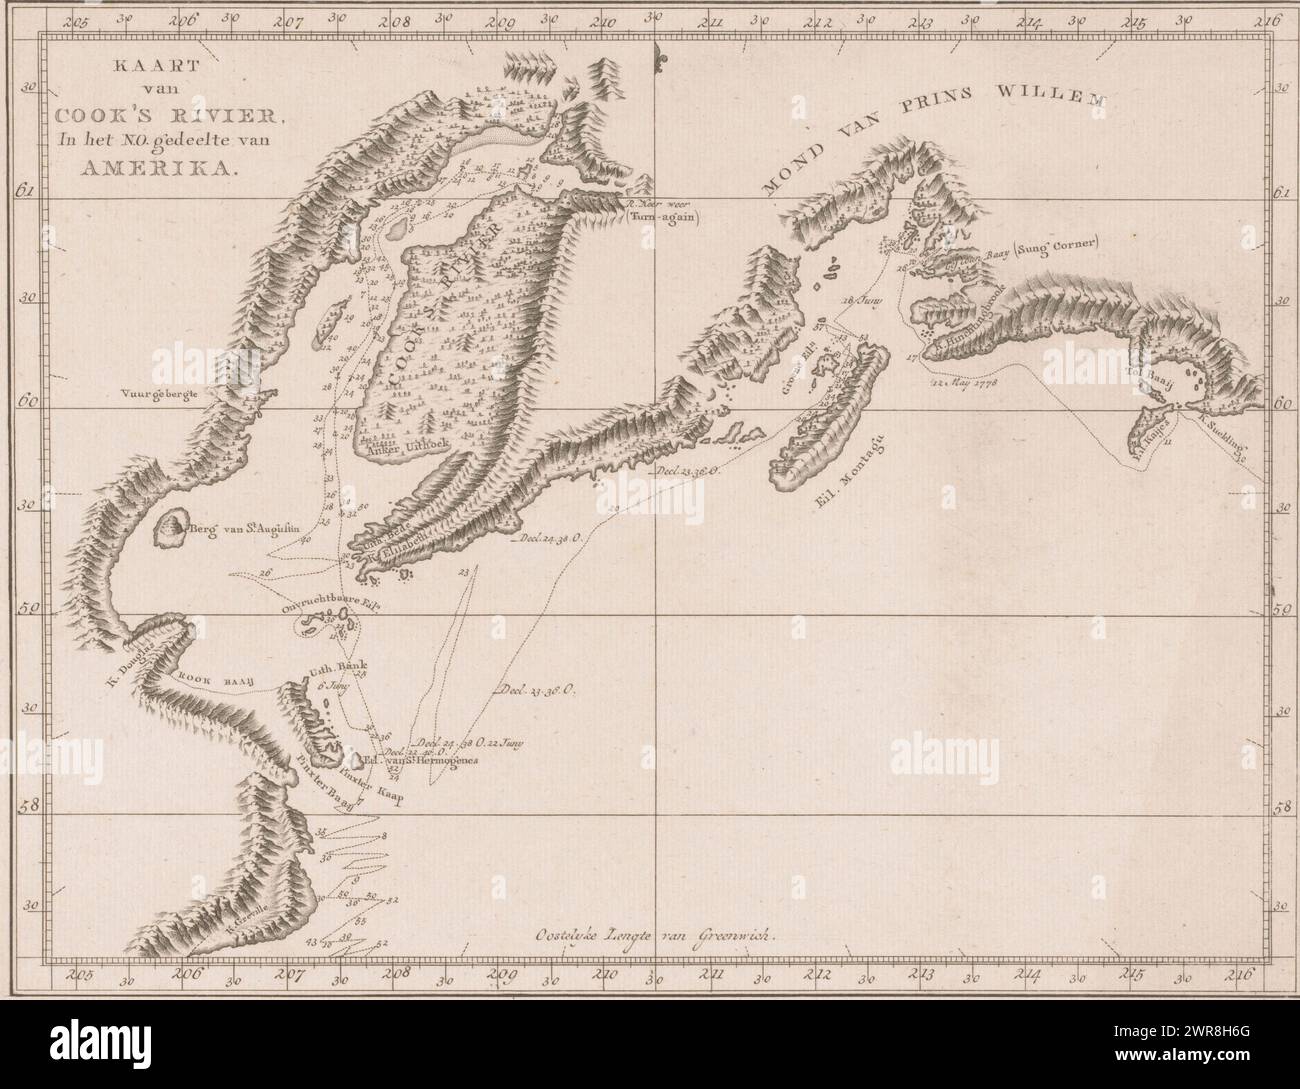 Karte von Cooks River, Amerika, Karte von Cook's River im nordamerikanischen Teil (Titel auf Objekt), Karte von Cooks River. Die Route von James Cooks Expedition von 1778 ist angegeben. Um eine Abitur., Druckerei: Anonym, 1780 - 1800, Papier, Ätzen, Höhe 255 mm x Breite 320 mm, bedruckt Stockfoto